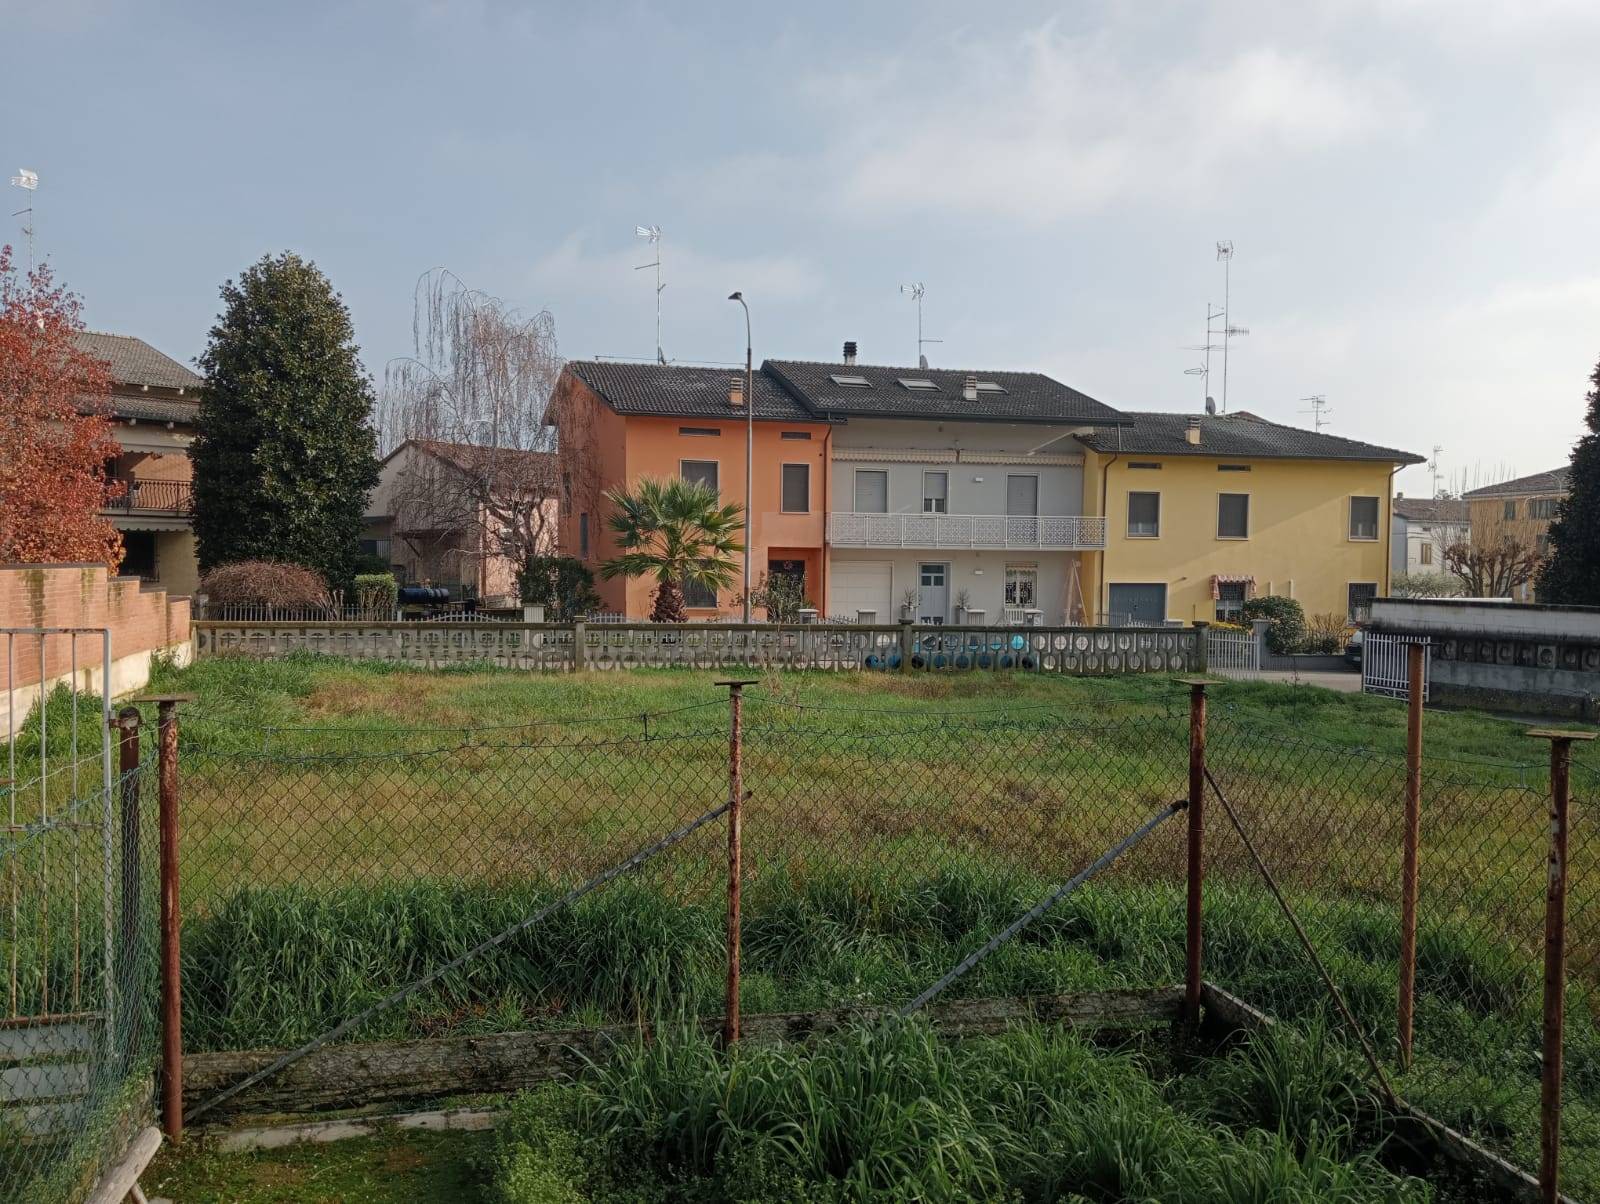 Terreno Edificabile Residenziale in vendita a Brescello, 9999 locali, prezzo € 70.000 | PortaleAgenzieImmobiliari.it